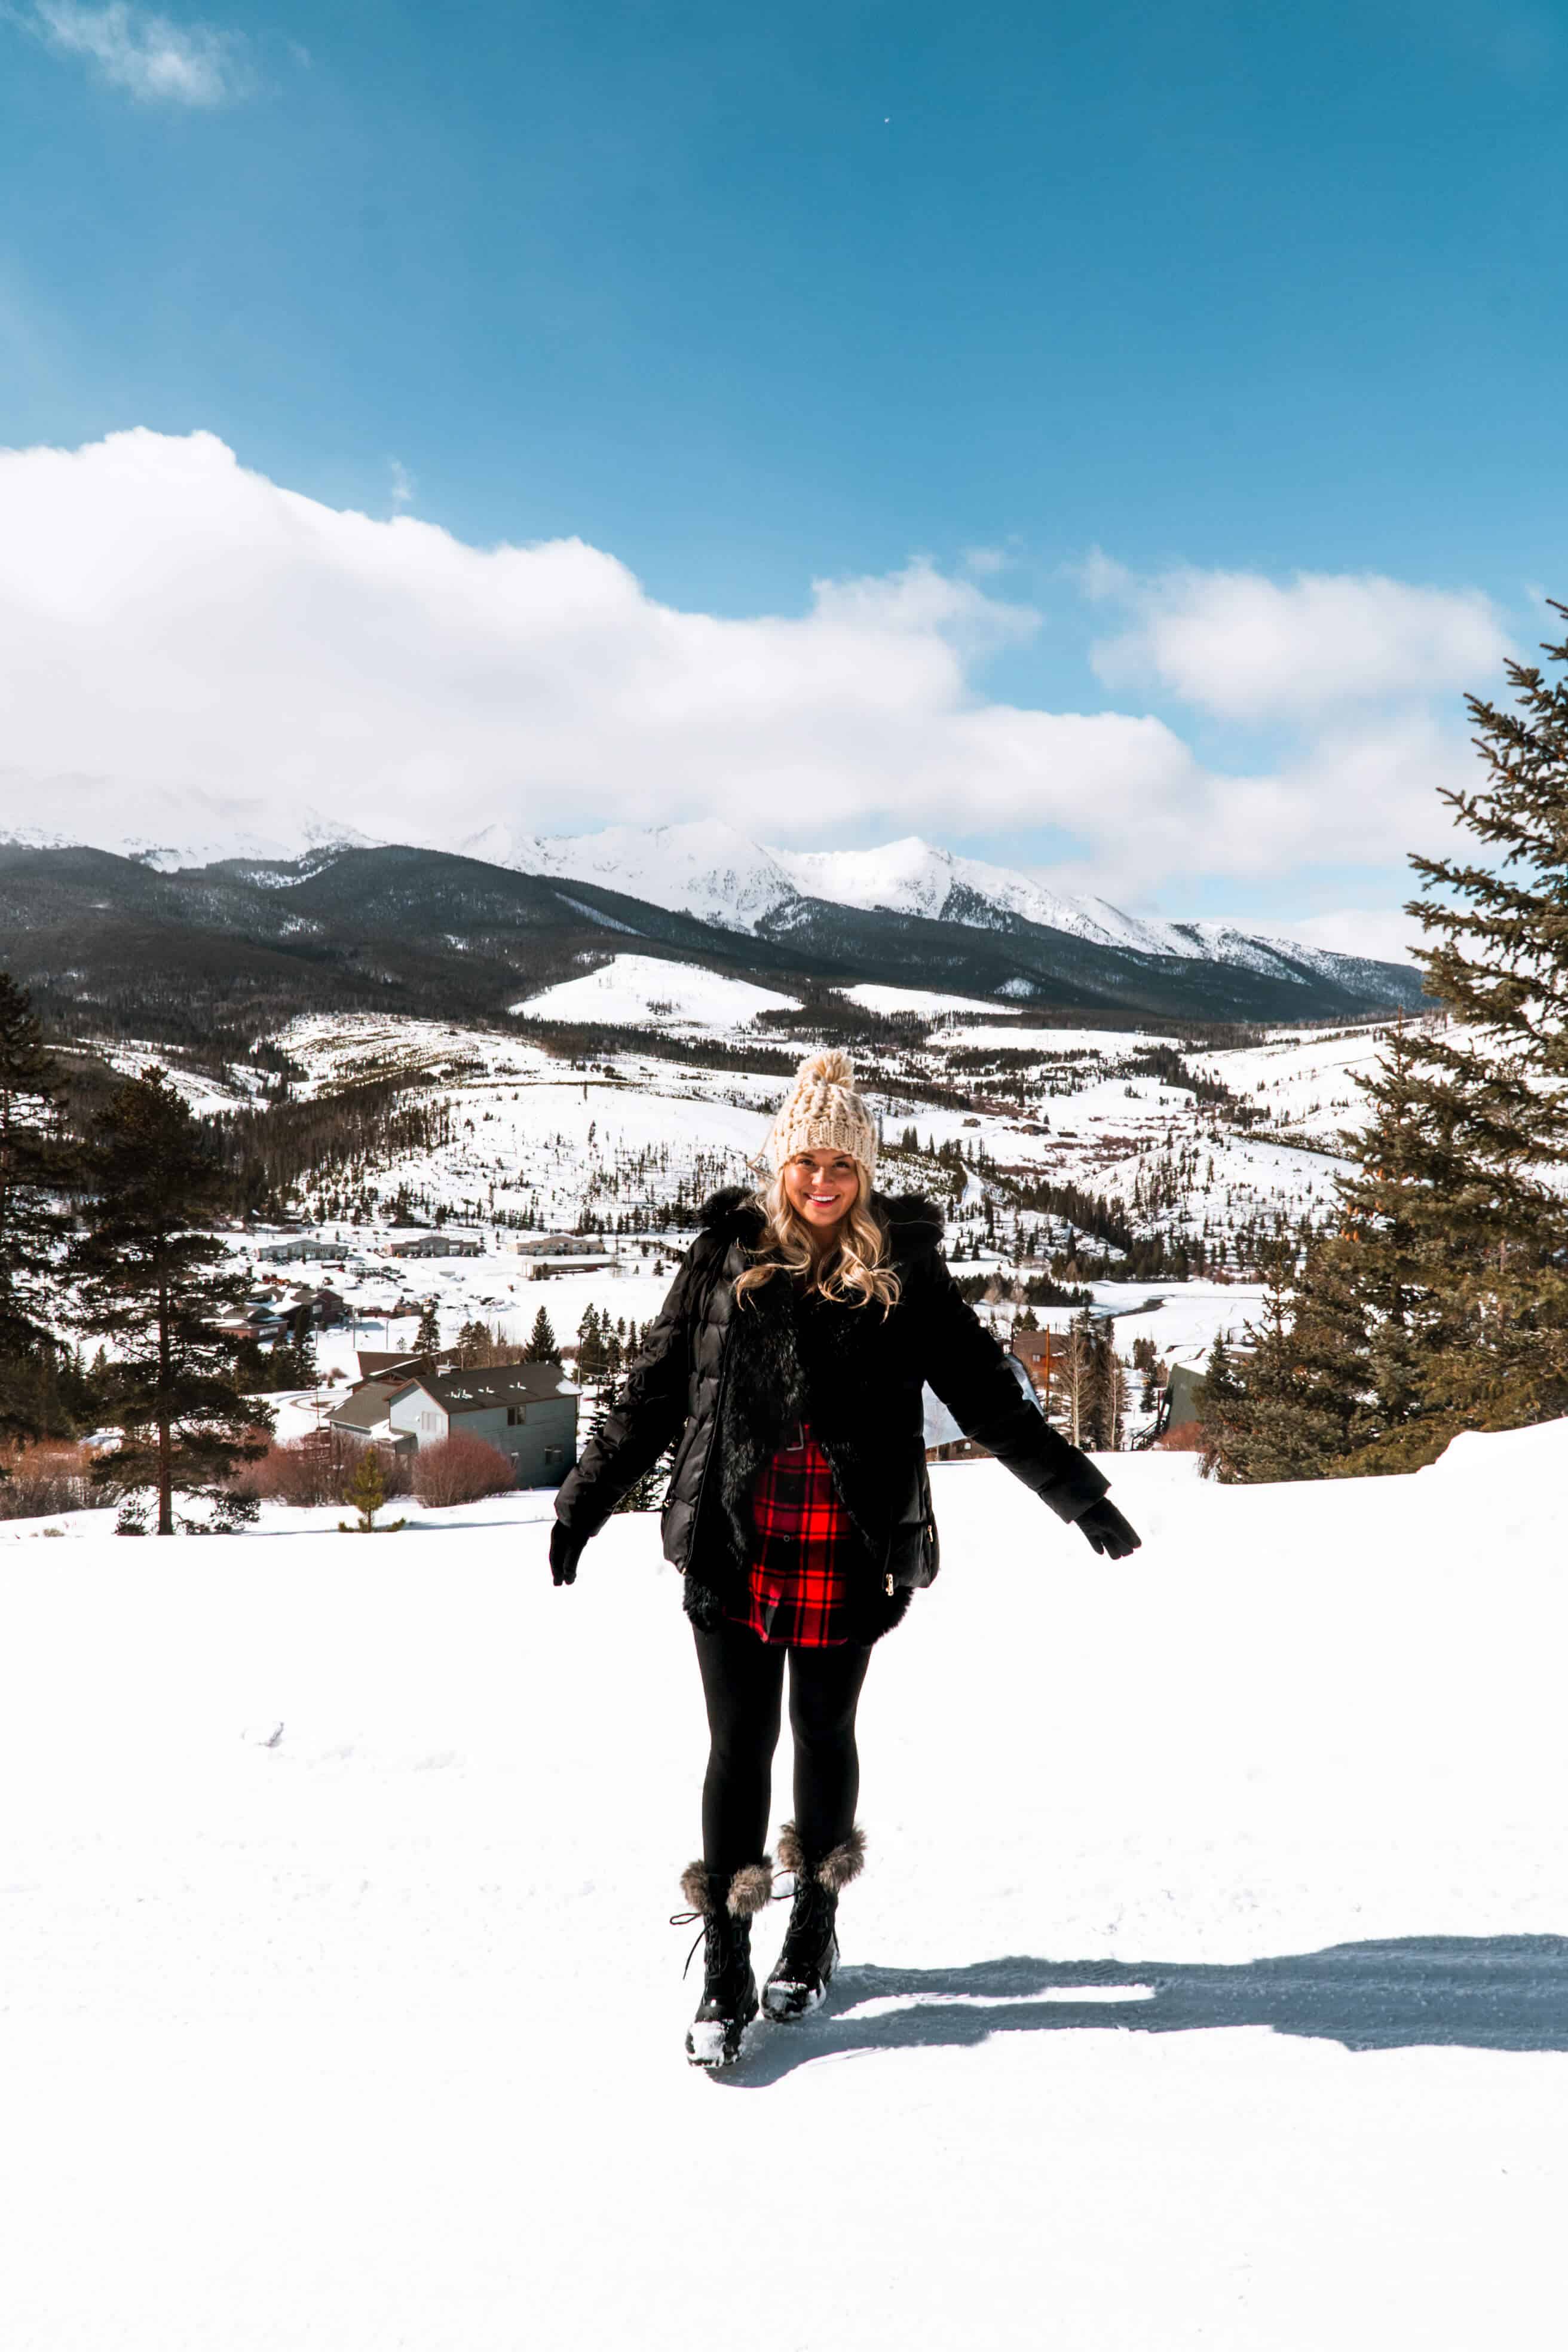 Mountain views over Breckenridge, Colorado | The Ultimate Guide to Breckenridge in the Winter